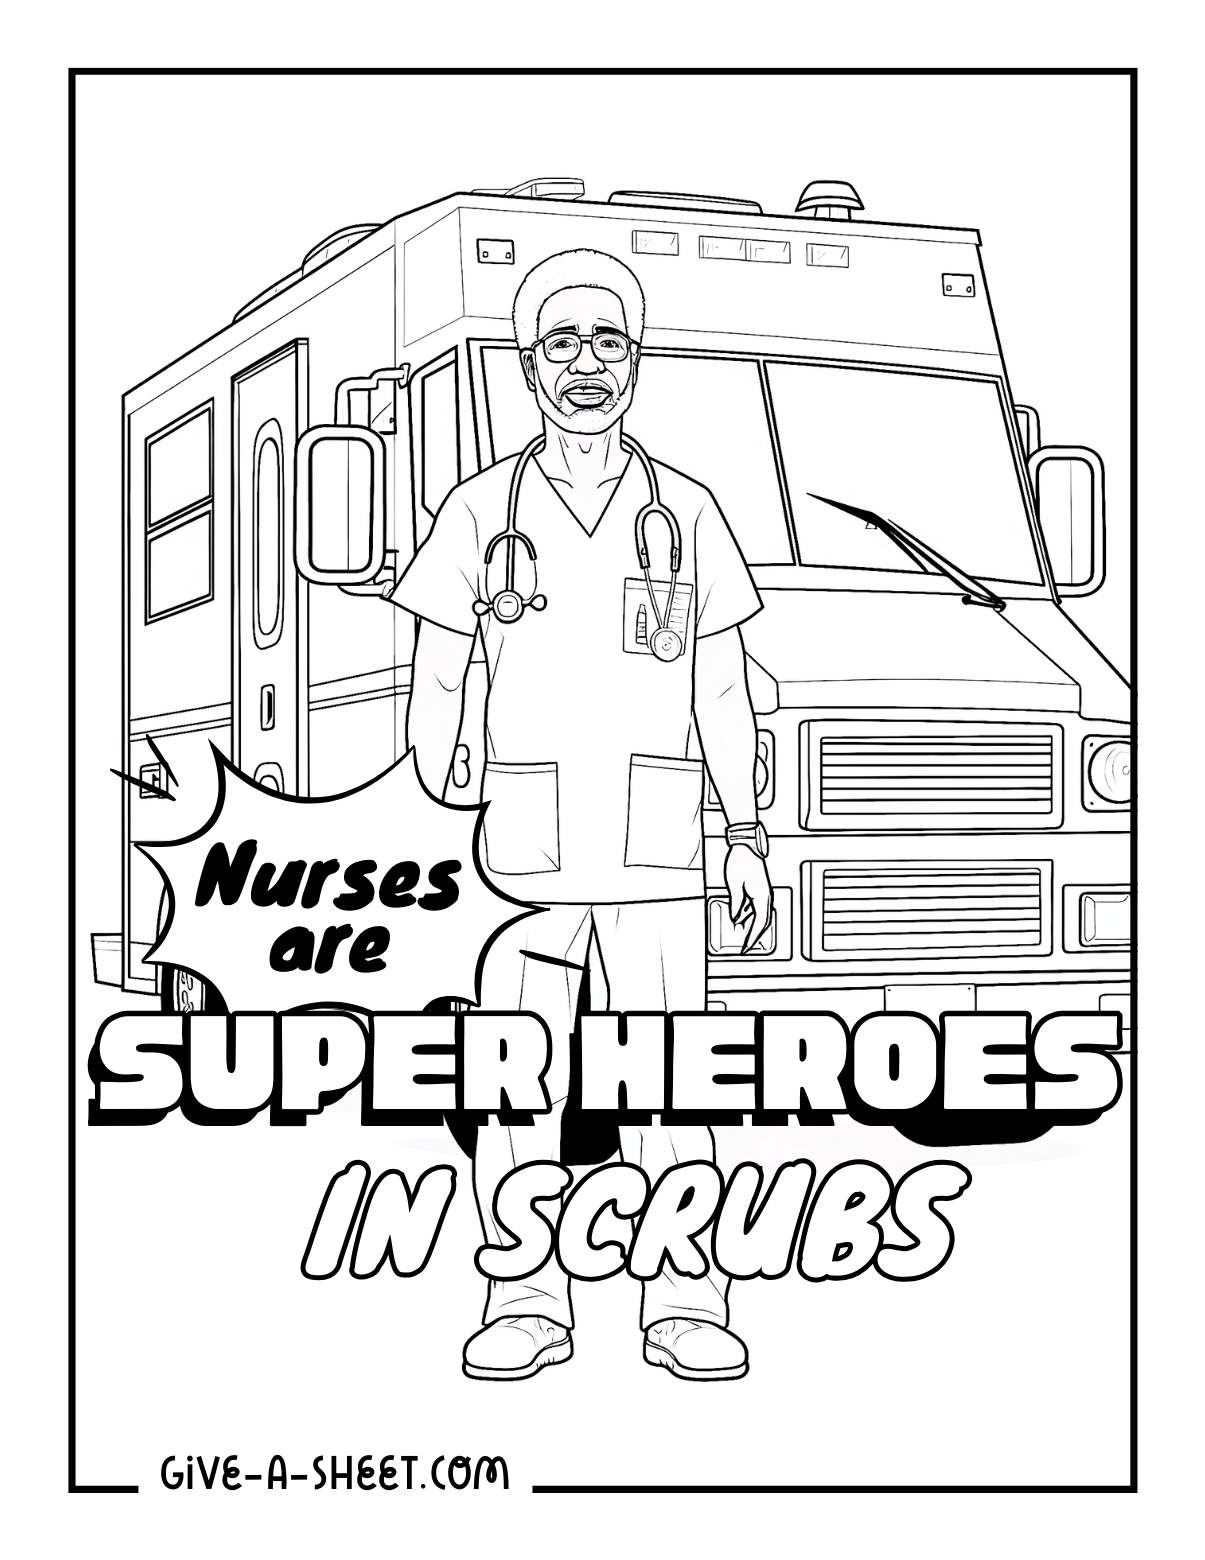 Diverse nurse coloring page wearing super hero scrubs.